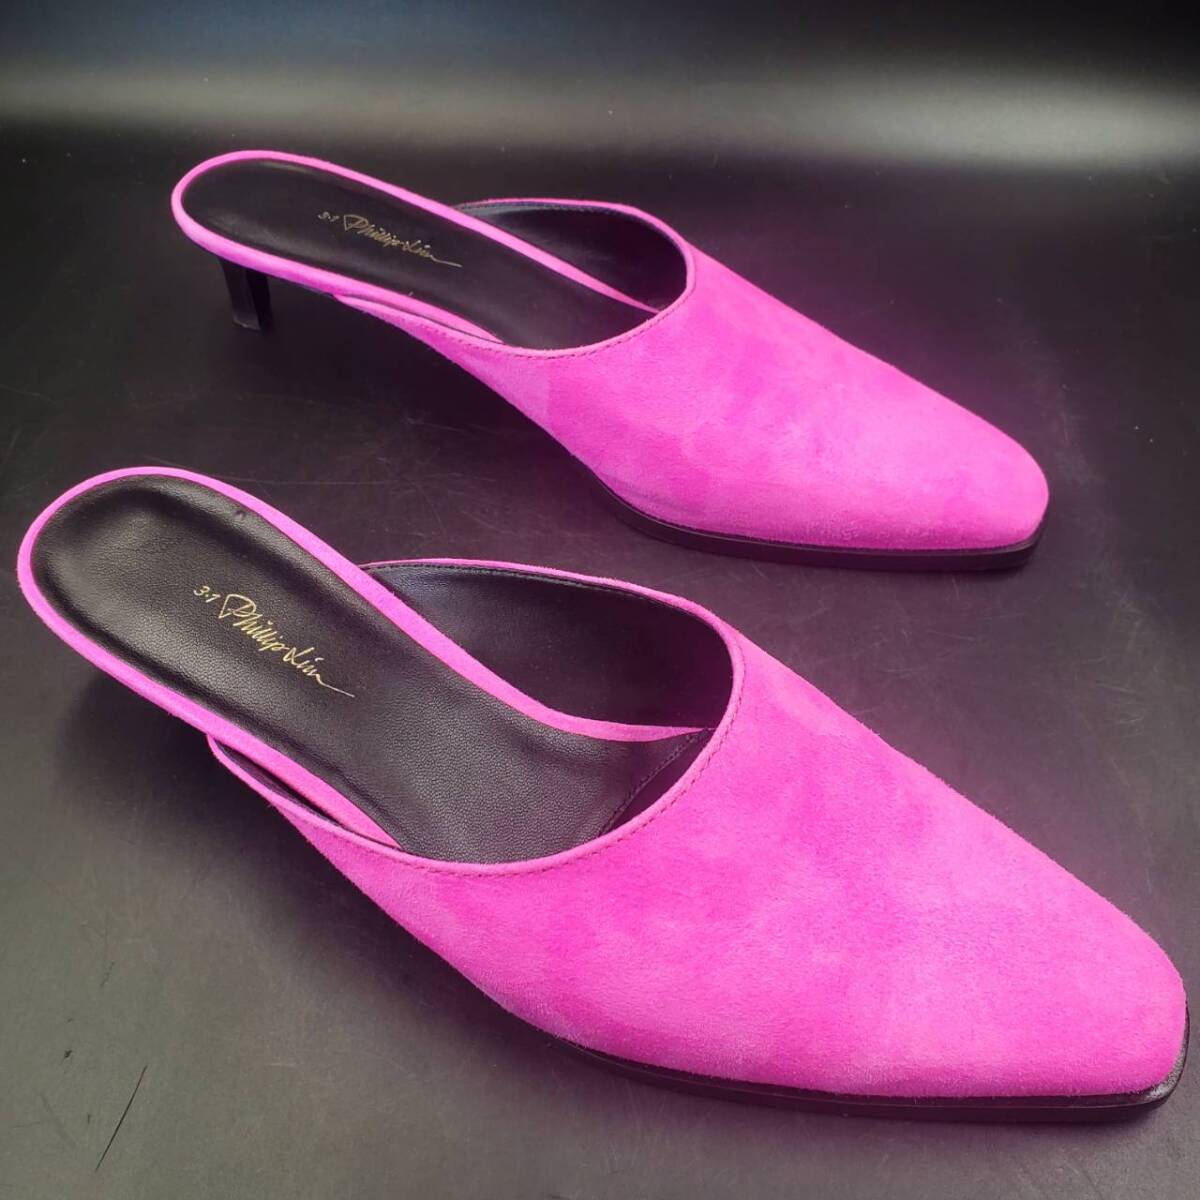 #51 3.1 Phillip Lim フィリップリム フラット ミュール サイズ 39 ピンク PINK サンダル パンプス 本革 靴 アパレル レディース_画像5